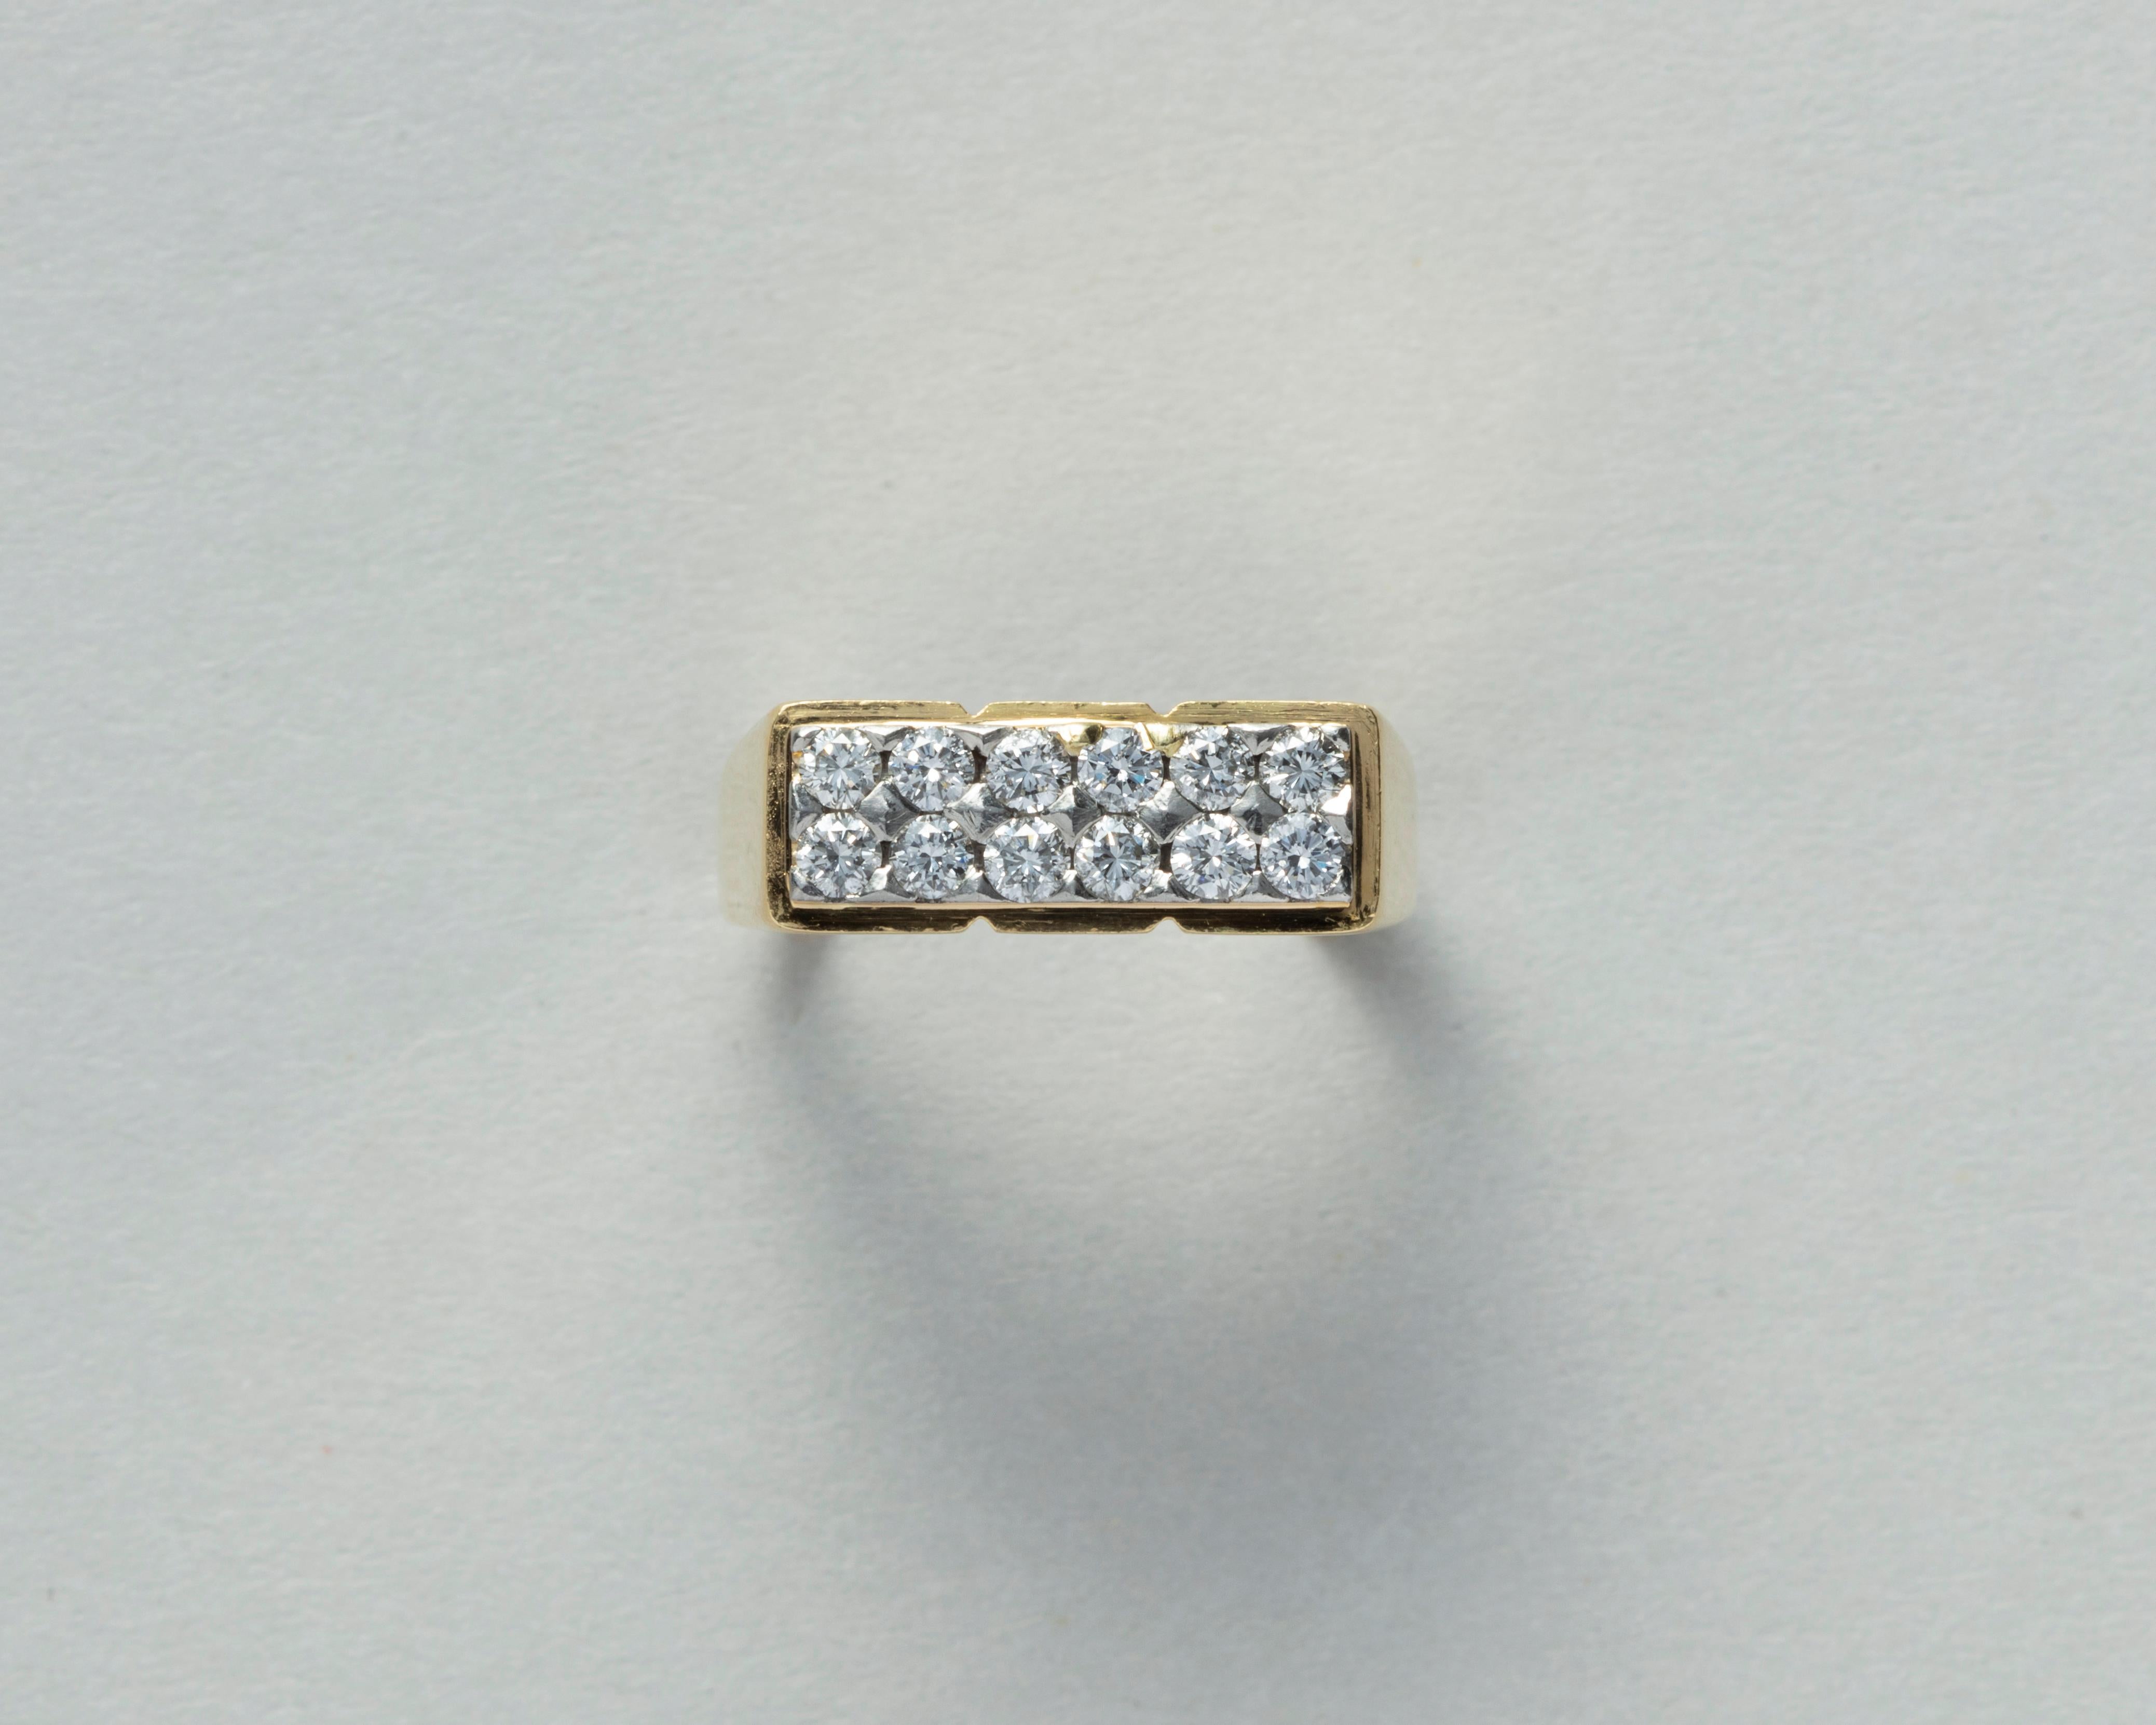 Une bague en or 18 carats avec un plateau rectangulaire serti de deux rangées de 6 diamants taille brillant (environ 0,48 carat au total) en or blanc ; la partie supérieure de la bague est divisée en 3 parties. signée : Fred, Paris circa